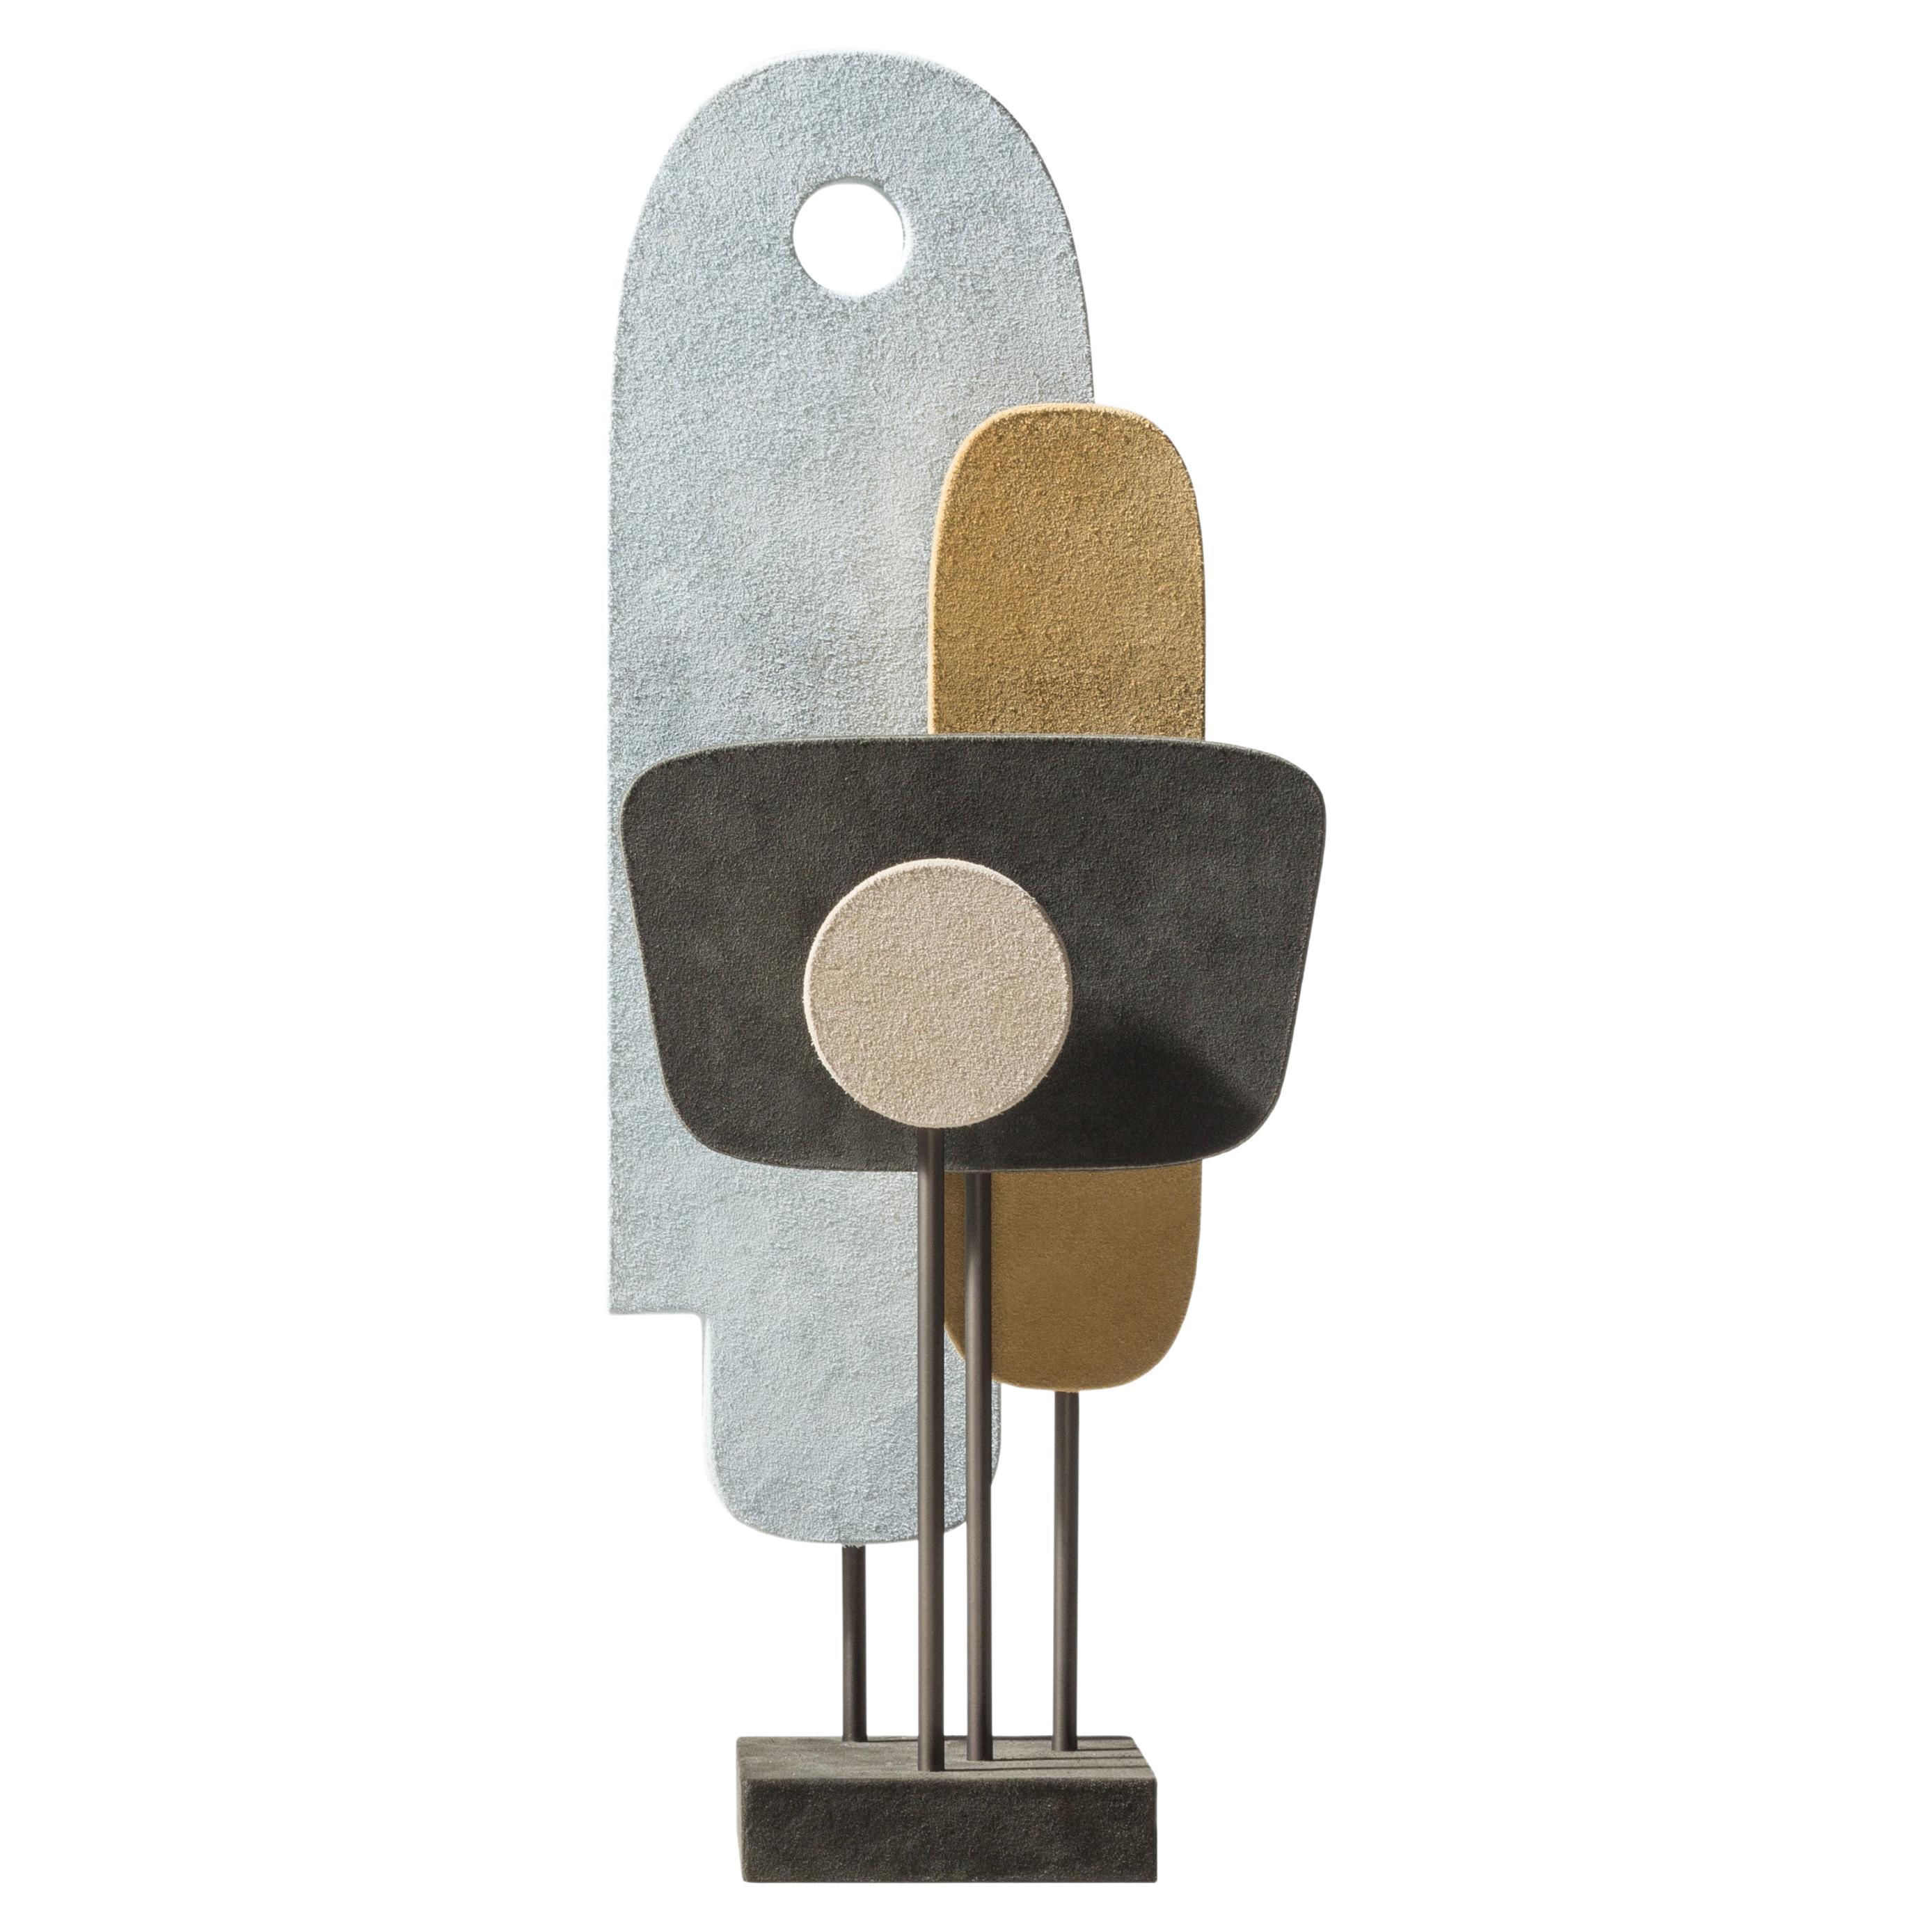 Leder- und Bronzeskulptur Stephane Parmentier für Giobagnara Tabou-Skulptur 1